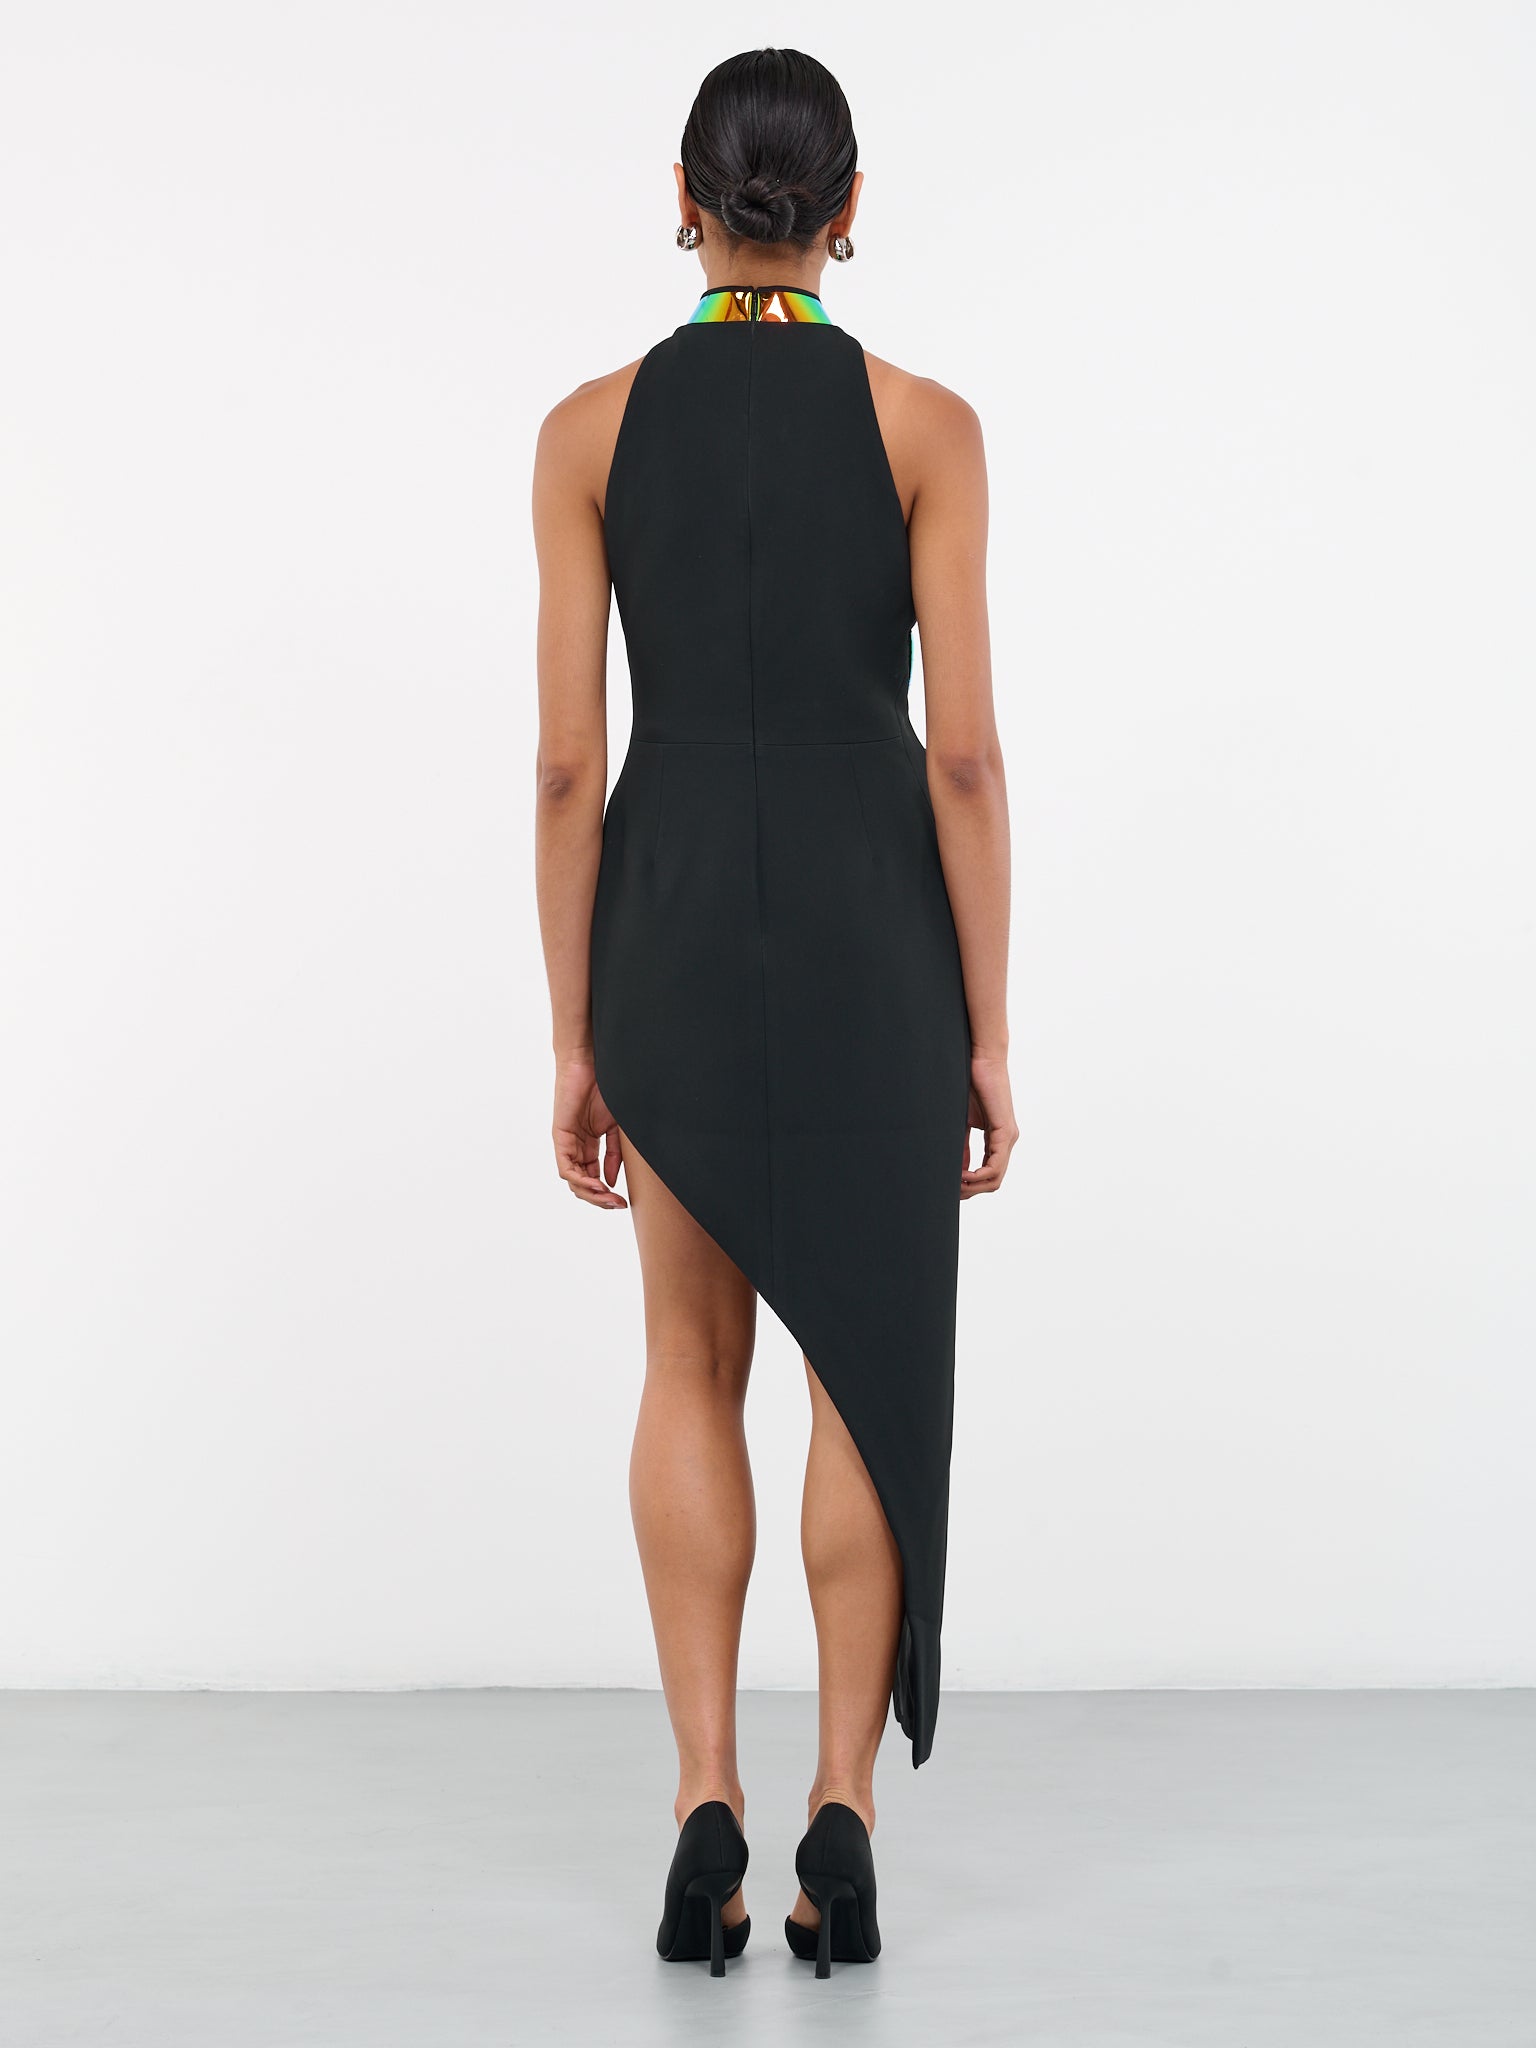 Asymmetric Iridescent Cut-Out Dress (DK31D-BLACK-DARK-IRIDESCENT)